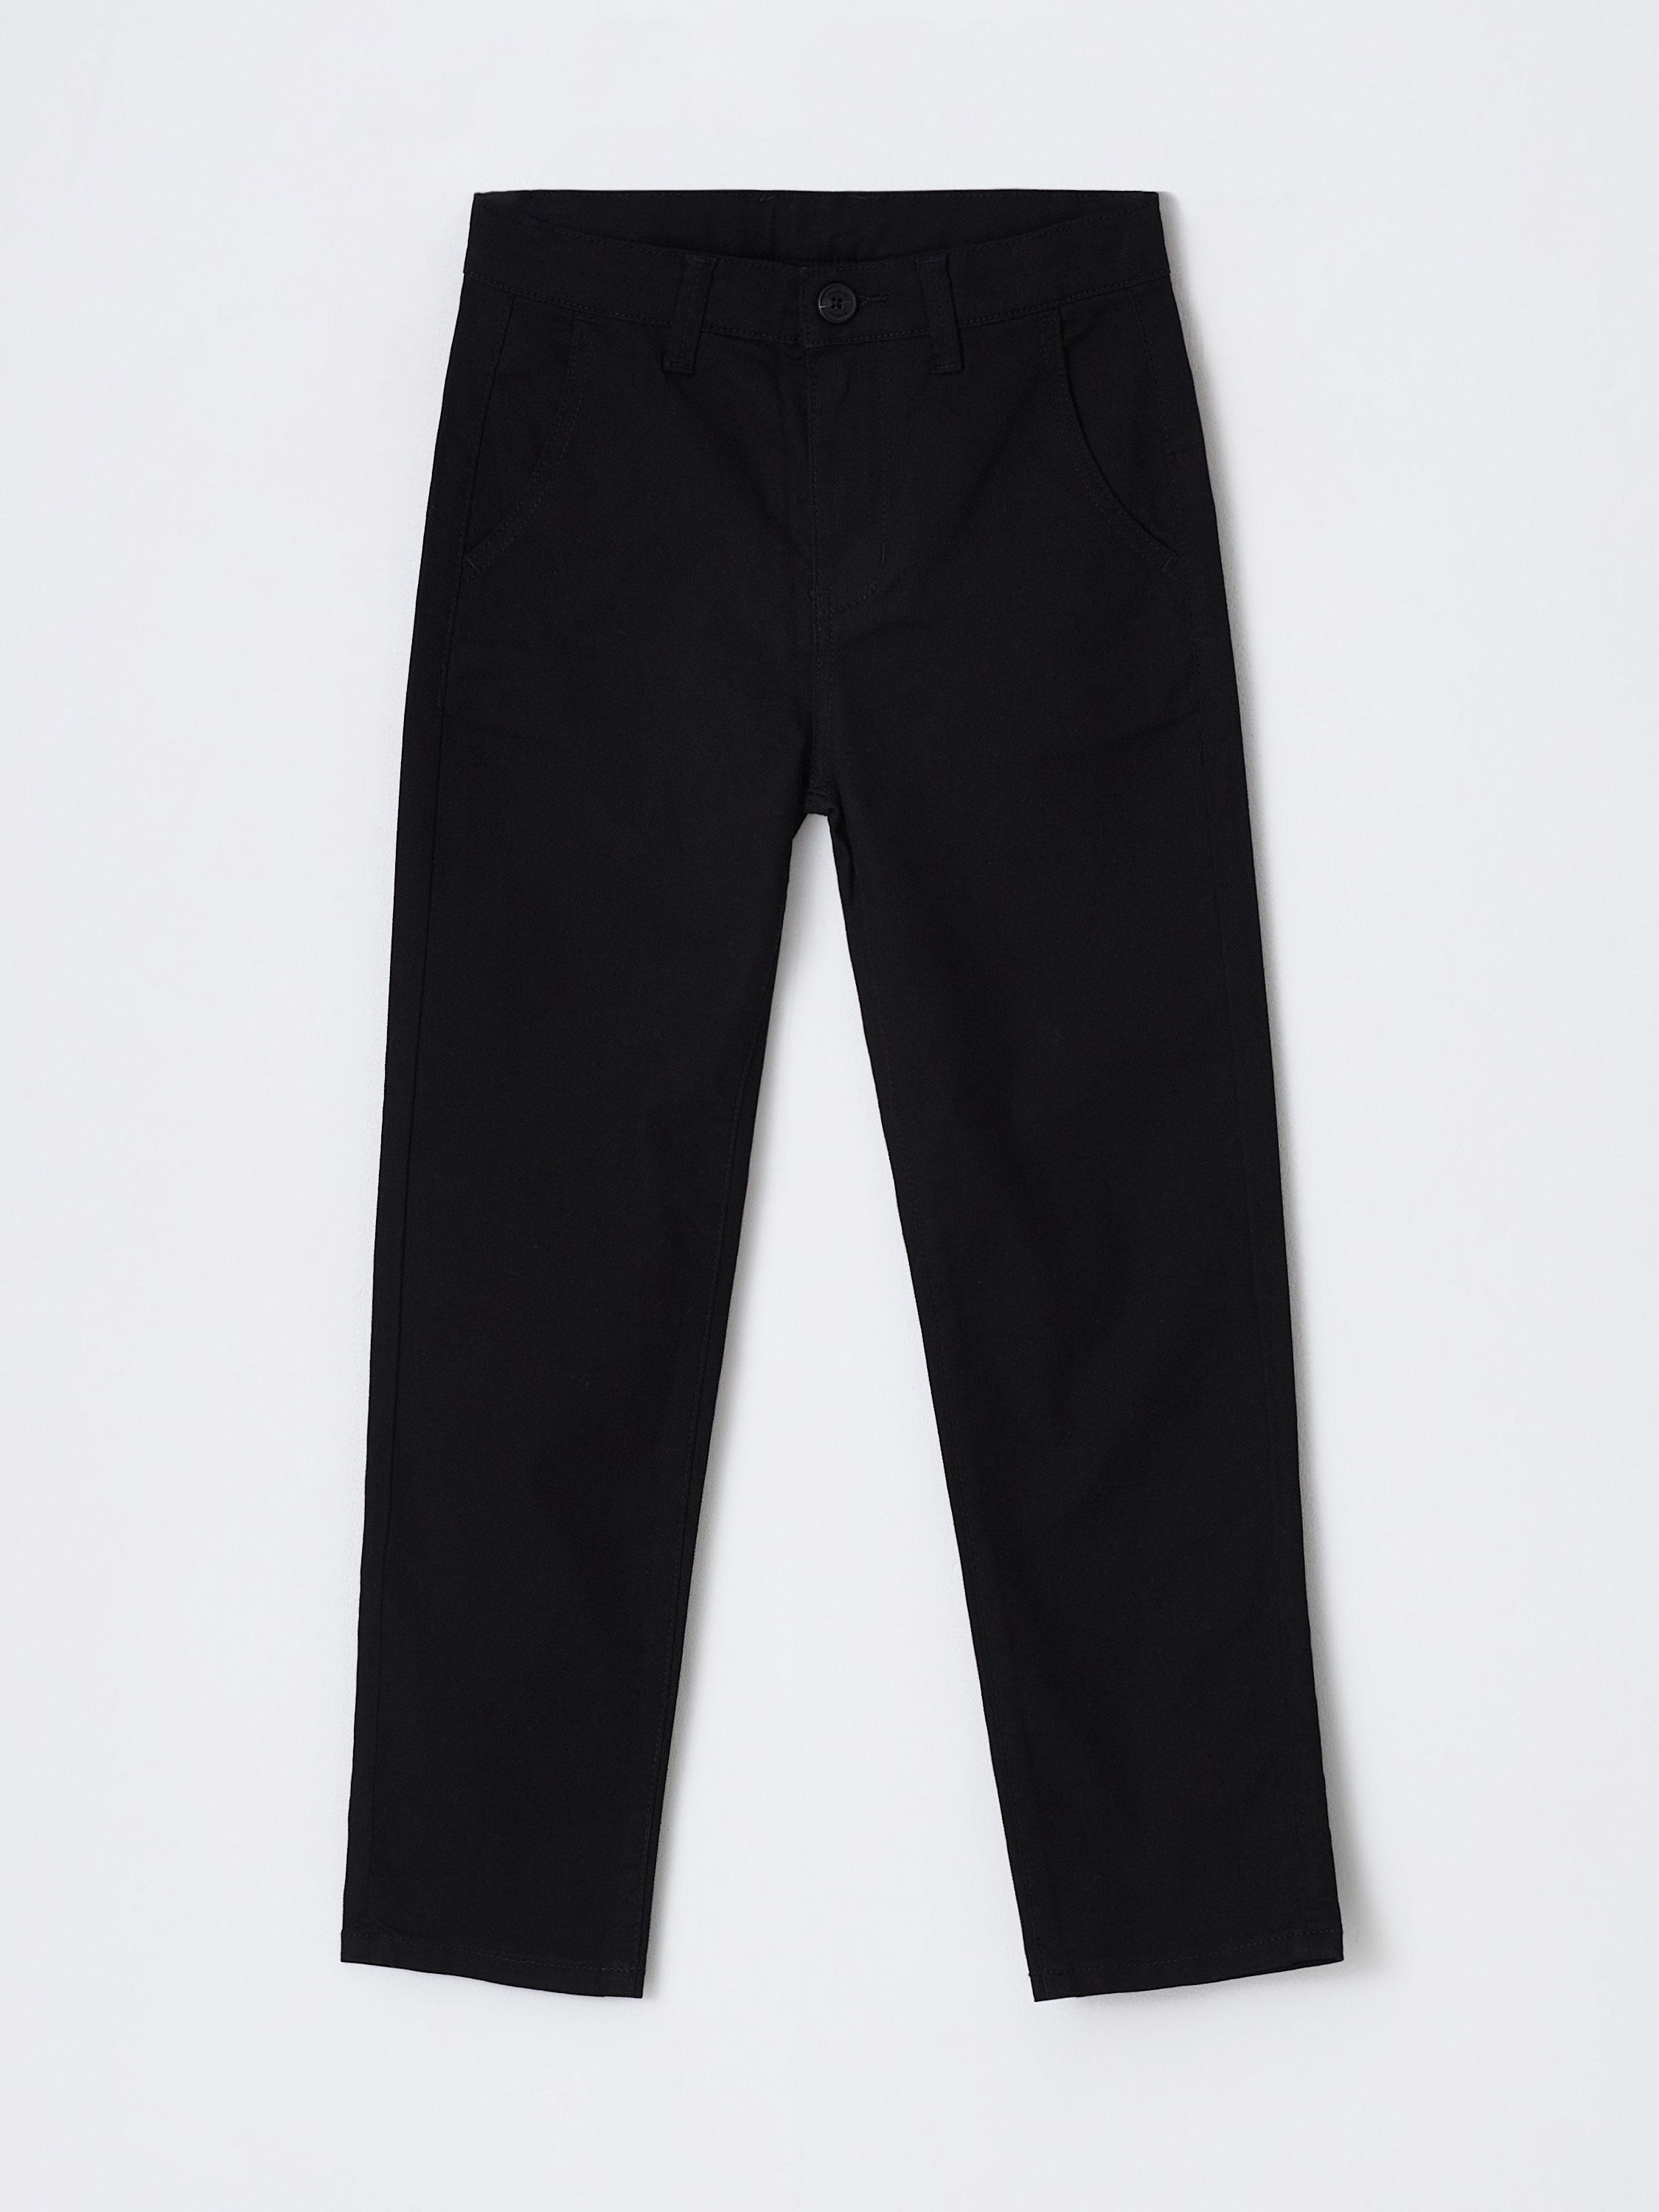 Школьные брюки для мальчиков цвет: черный, артикул: 3801071524 – купить в интернет-магазине sela